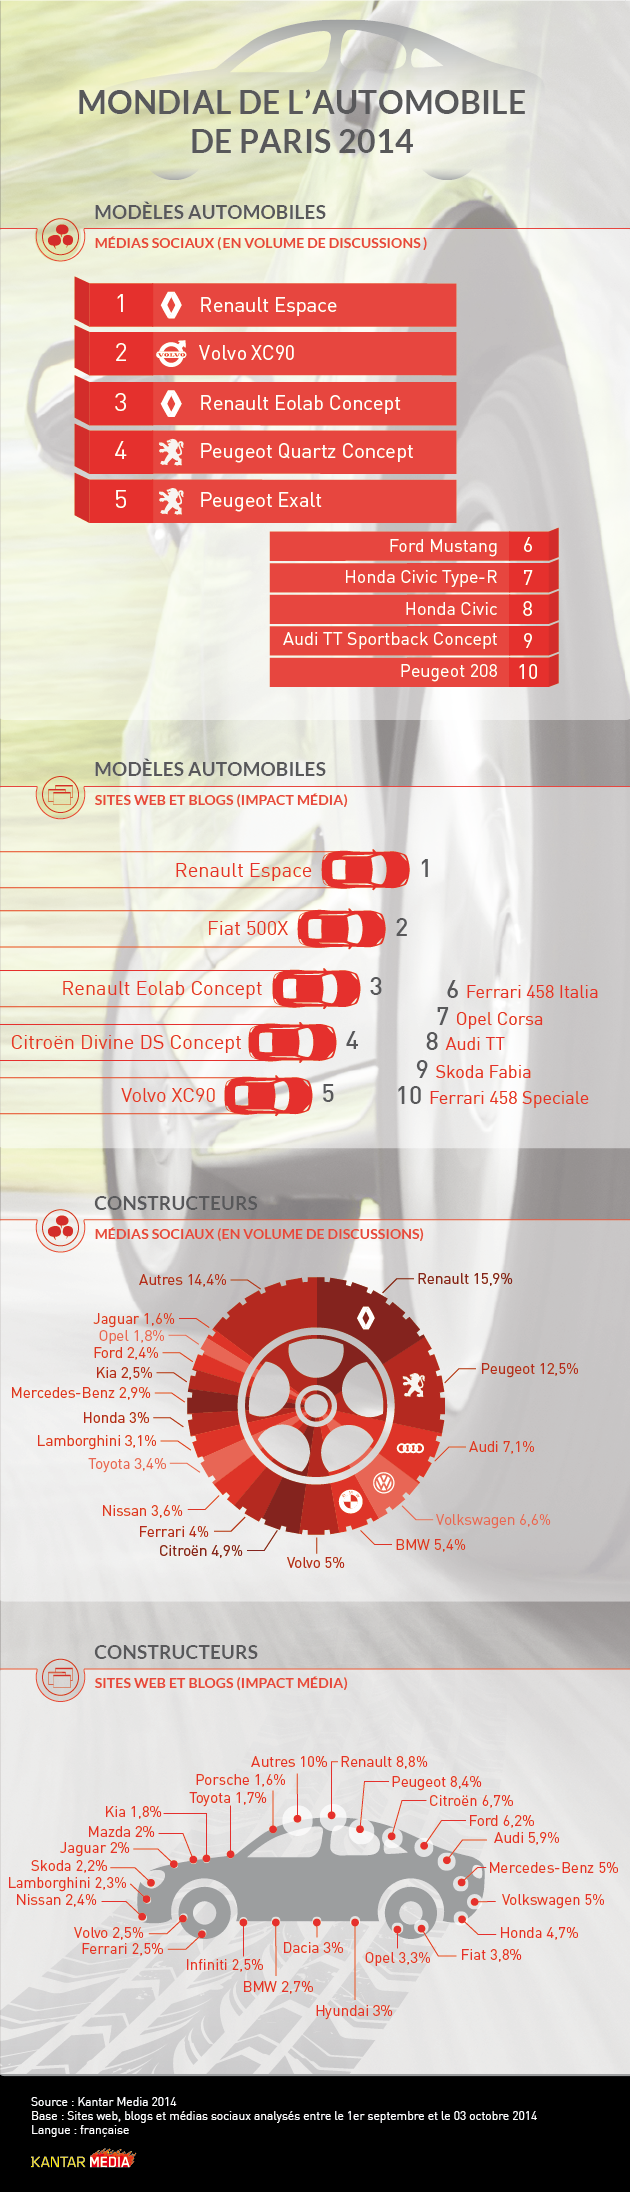 Le Mondial de l'Automobile 2014 sur les réseaux sociaux - Infographie - Kantar Media